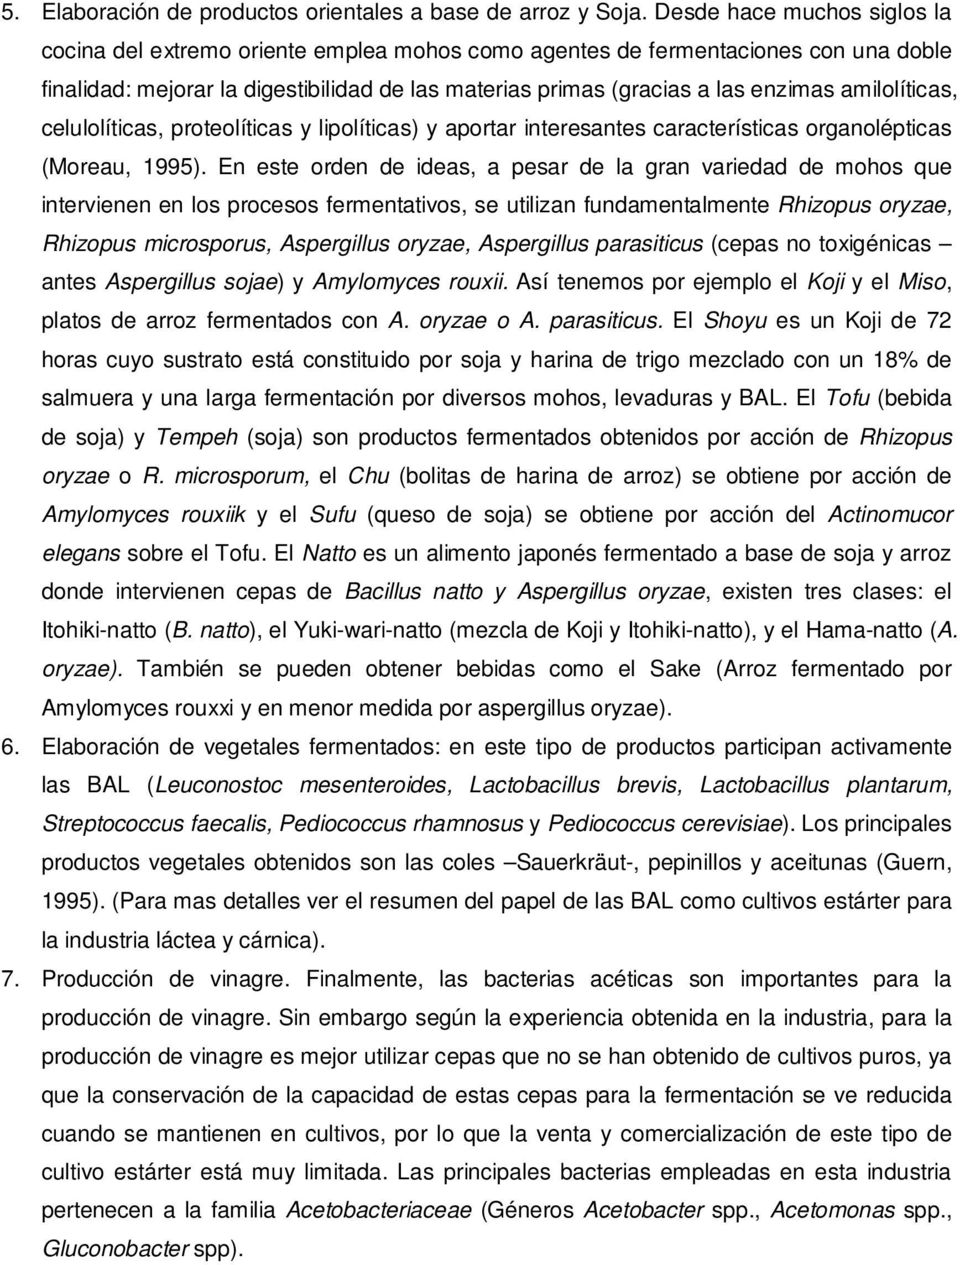 amilolíticas, celulolíticas, proteolíticas y lipolíticas) y aportar interesantes características organolépticas (Moreau, 1995).